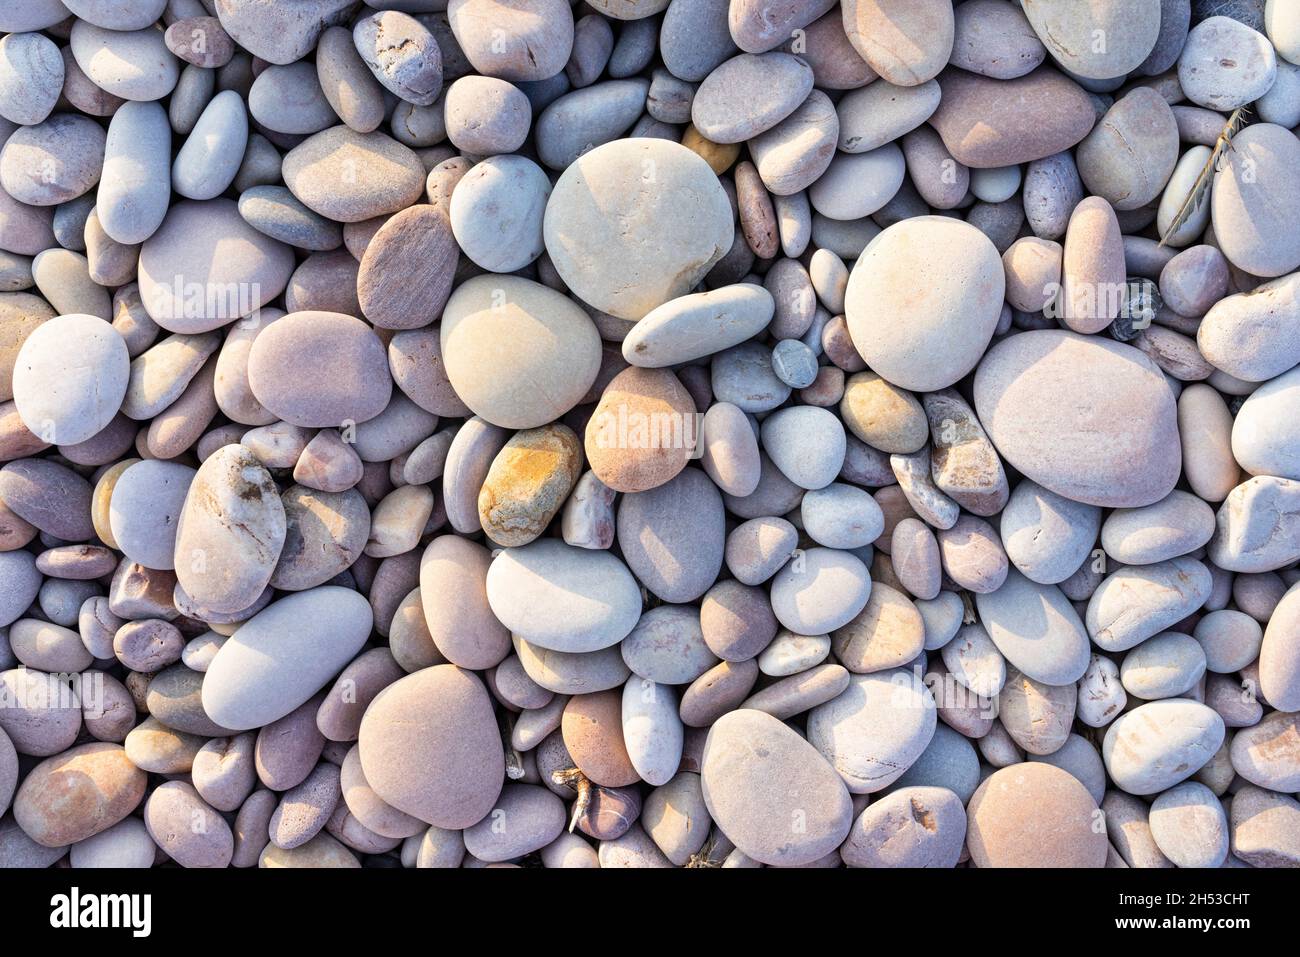 Plusieurs tailles différentes de galets de plage et de galets multicolores sur une plage de galets Angleterre Royaume-Uni Banque D'Images